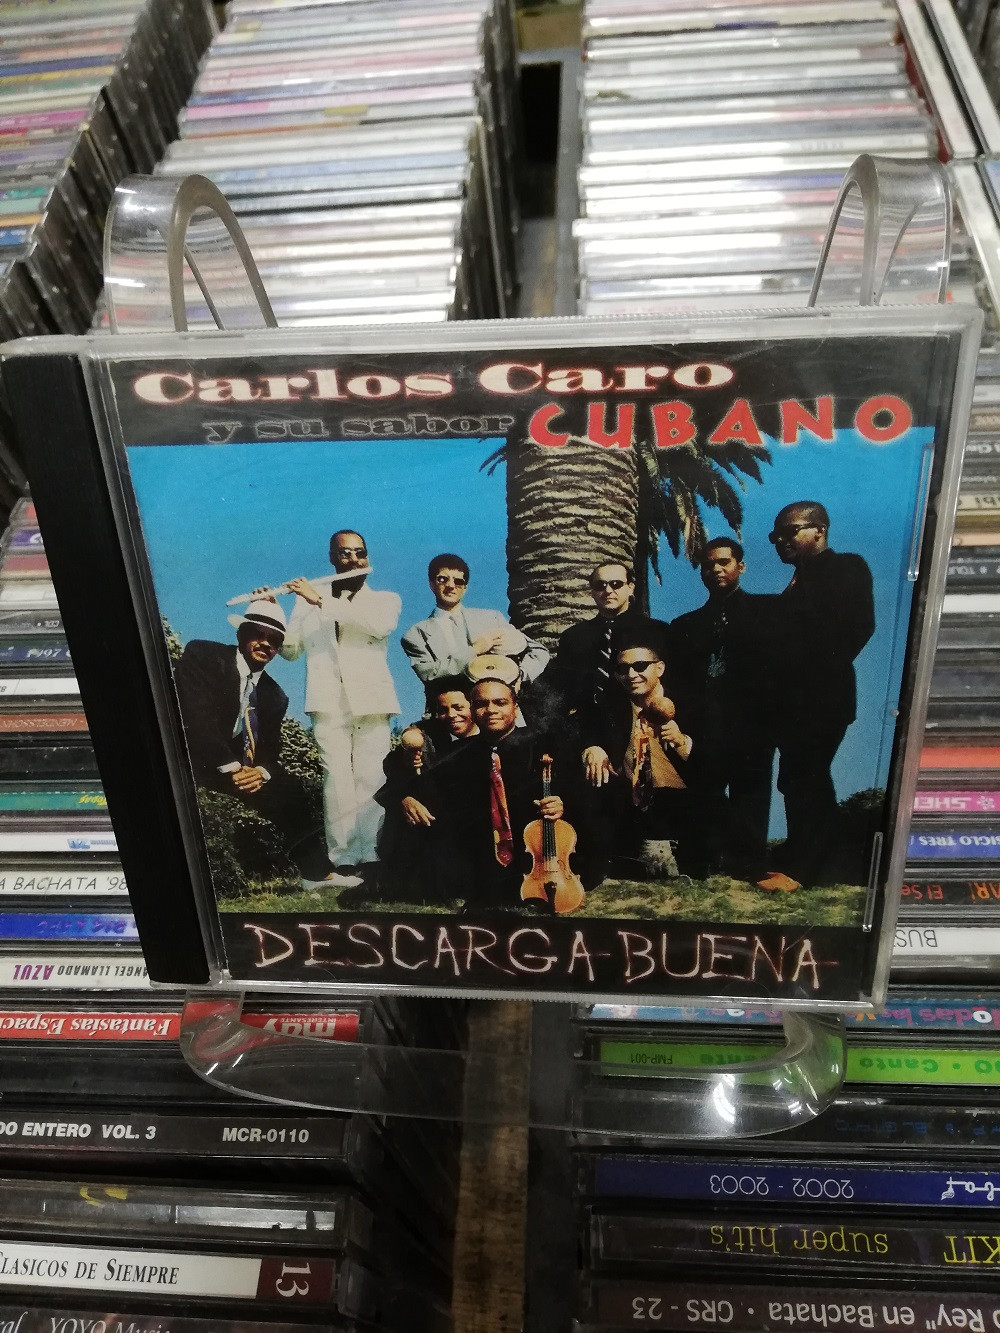 Imagen CD SALSA CUBANA CARLOS CARO Y SU SABOR CUBANO - DESCARGA BUENA 1